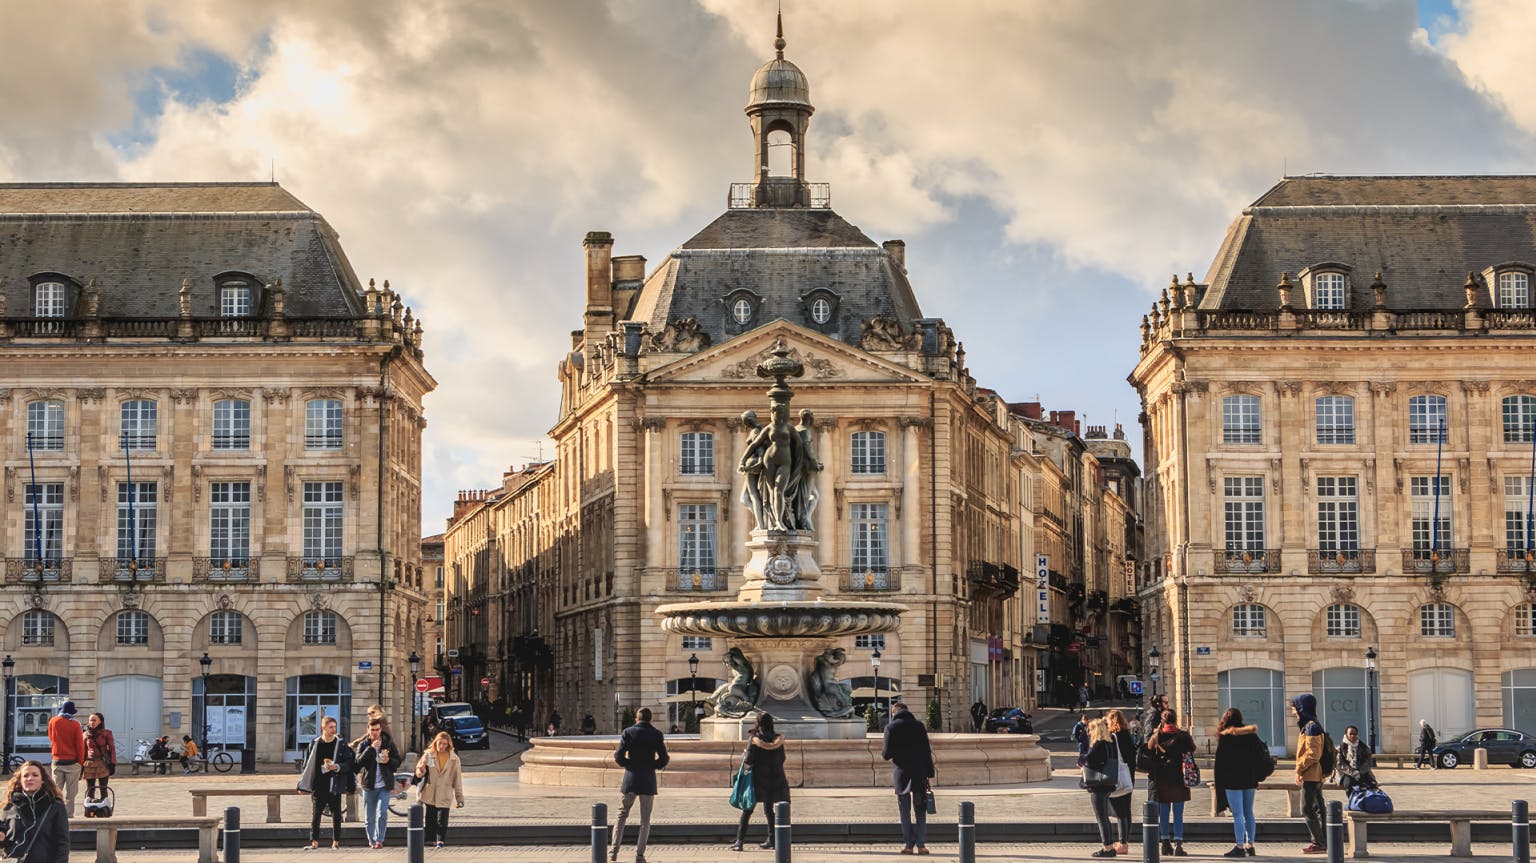 La Place de Bordeaux explained: what it is and how it works